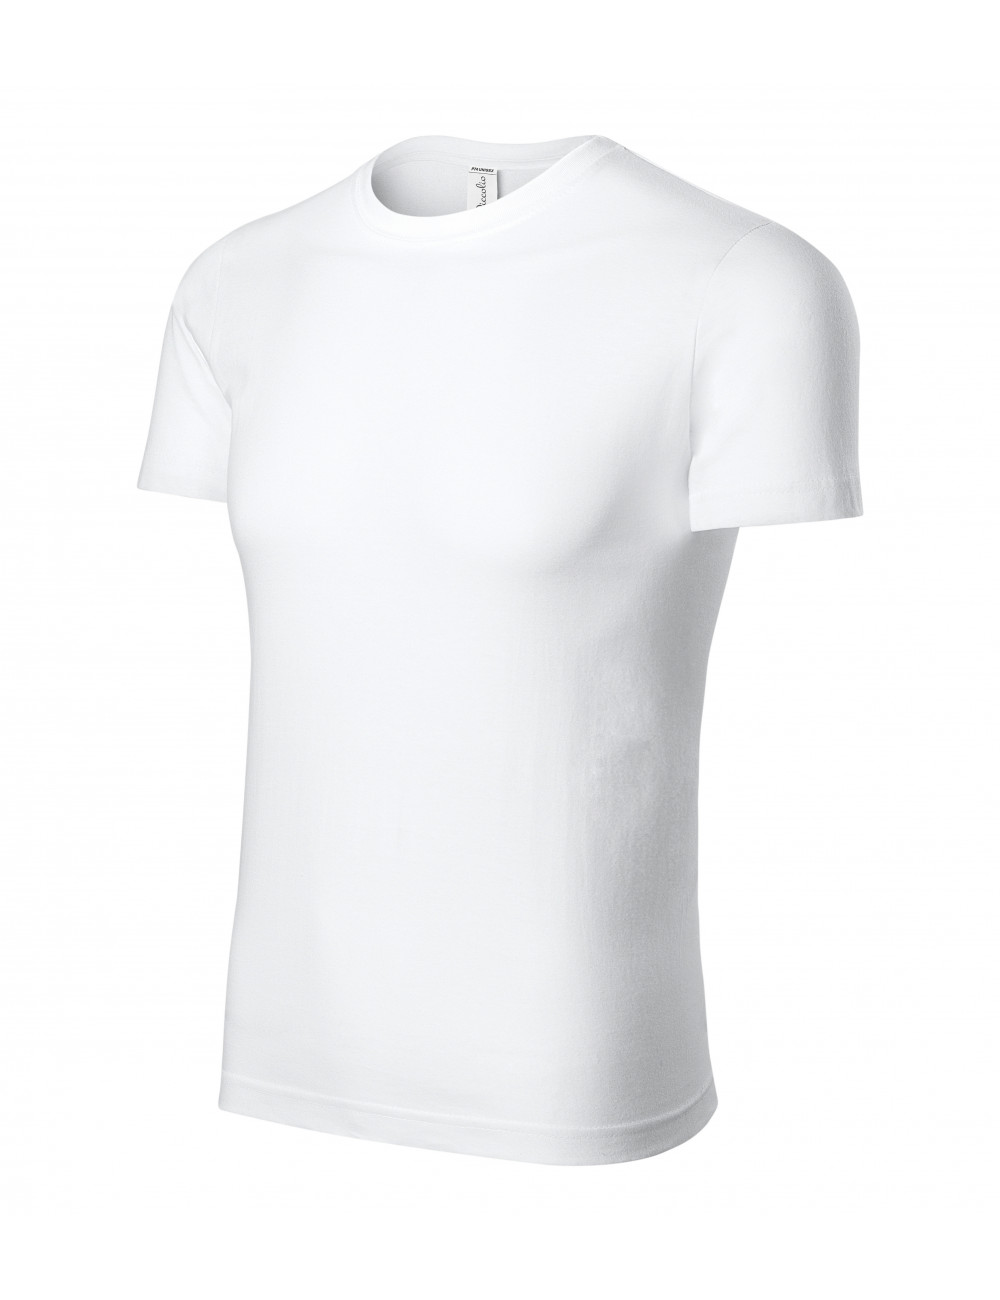 Peak p74 unisex t-shirt white Adler Piccolio